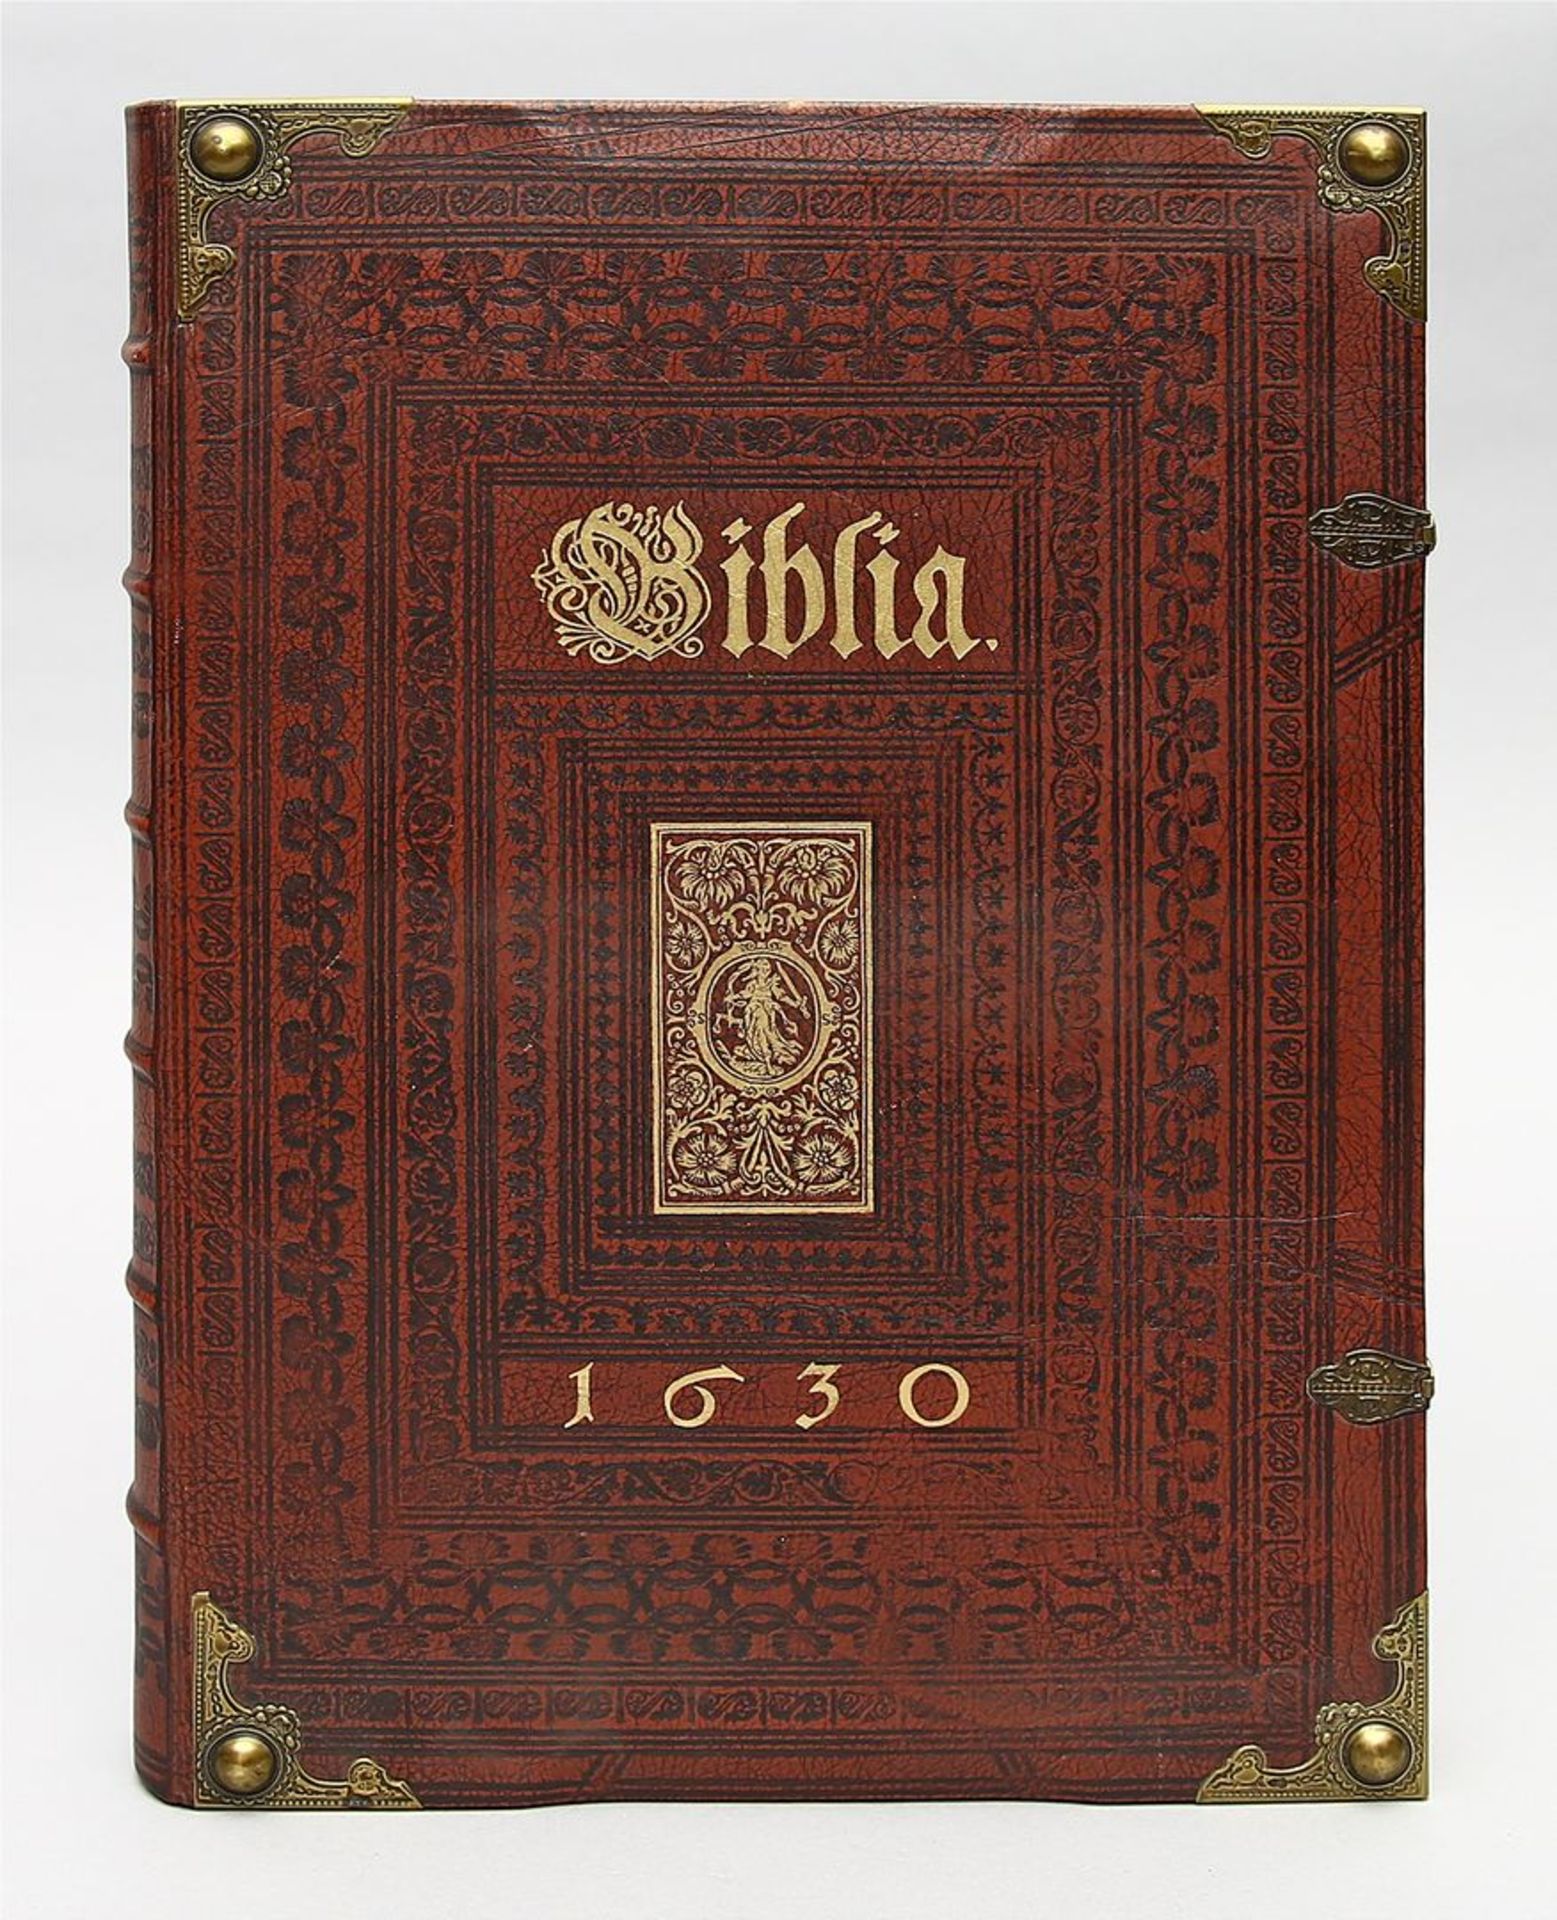 Faksimile "Biblia 1630".